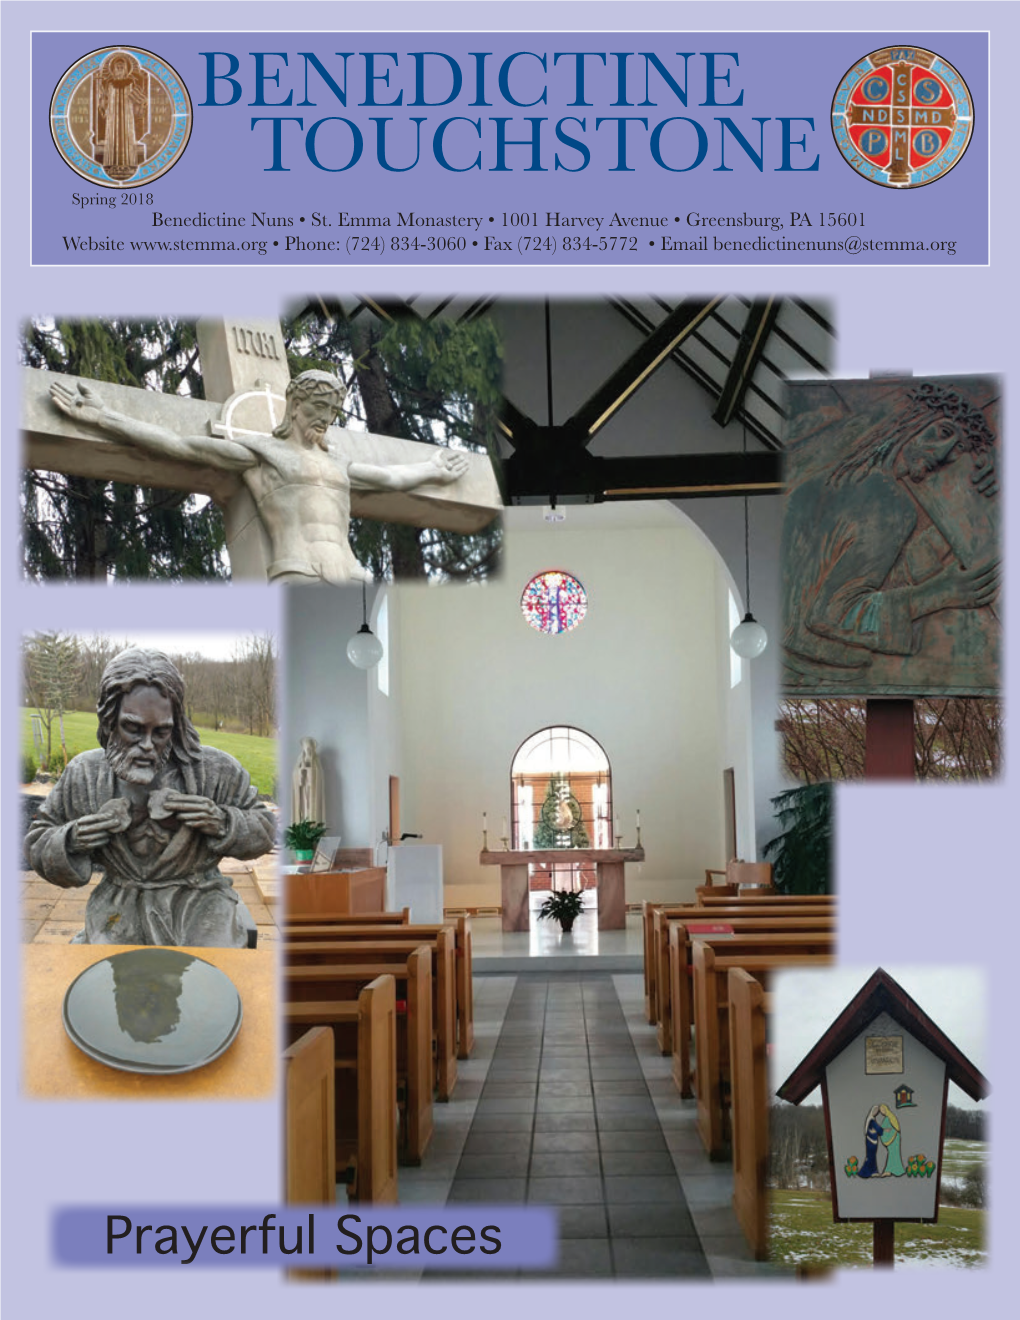 Touchstone Benedictine